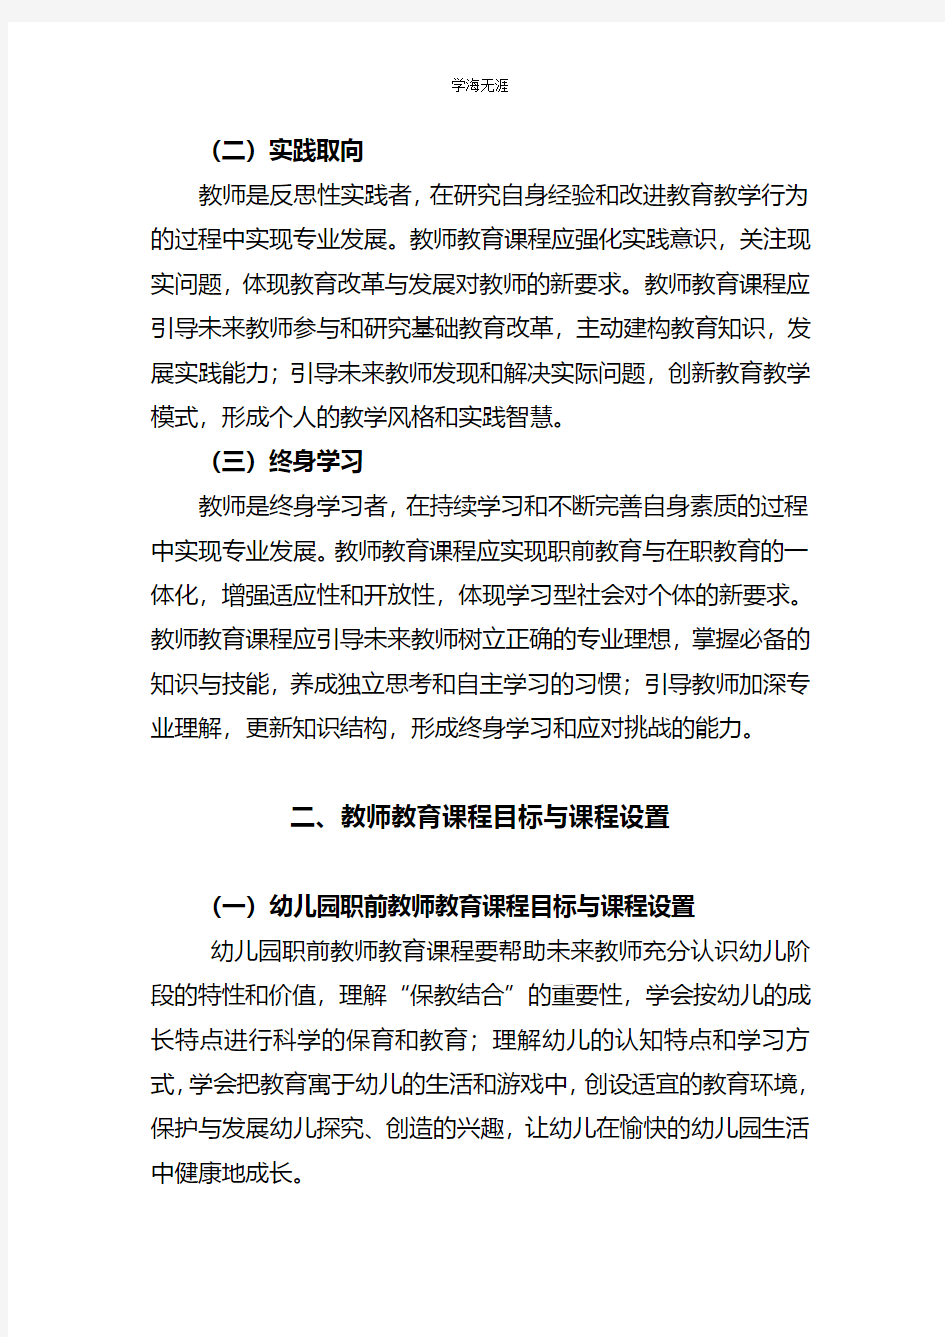 教师教育课程标准  中华人民共和国教育部(4月5日).pdf